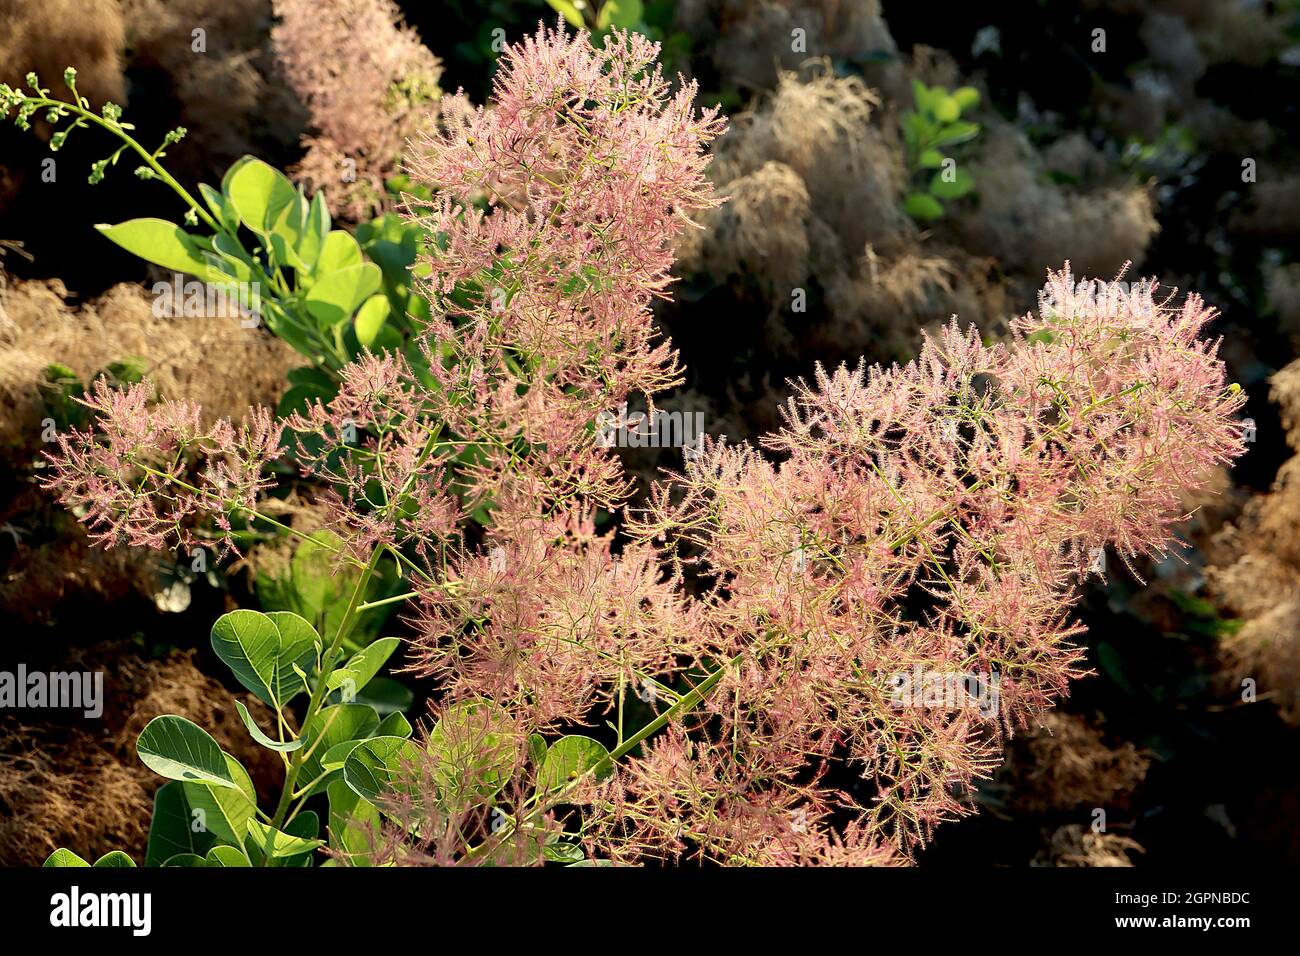 Cotinus coggygria ‘Young Lady’ Zwergrauchbusch Young Lady – hellrosa flauschige Blüten und frische grüne Ovateblätter, September, England, Großbritannien Stockfoto